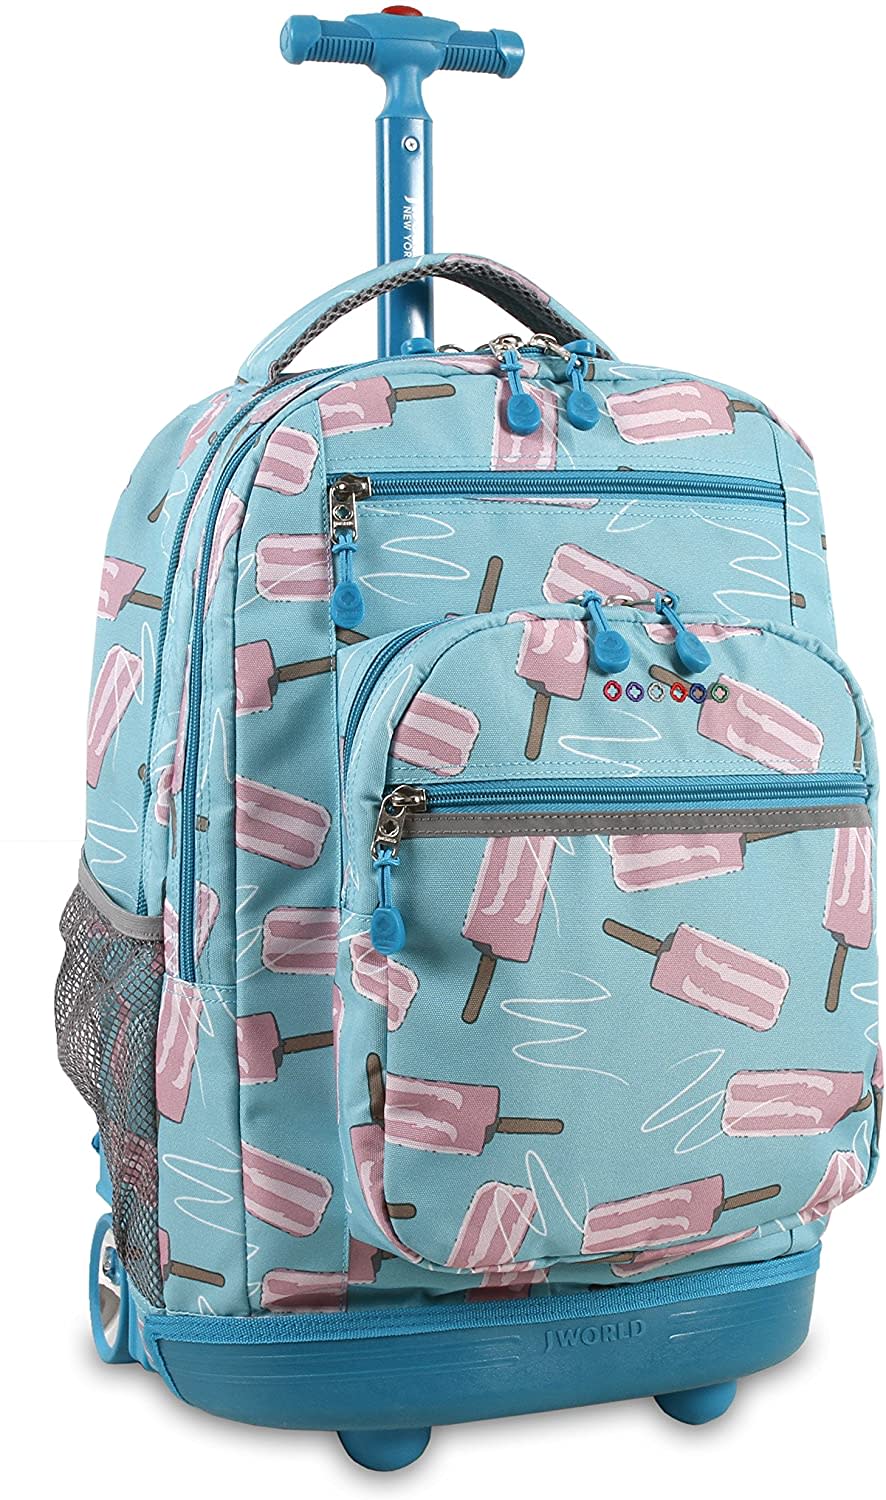 Rolling backpack for older kids